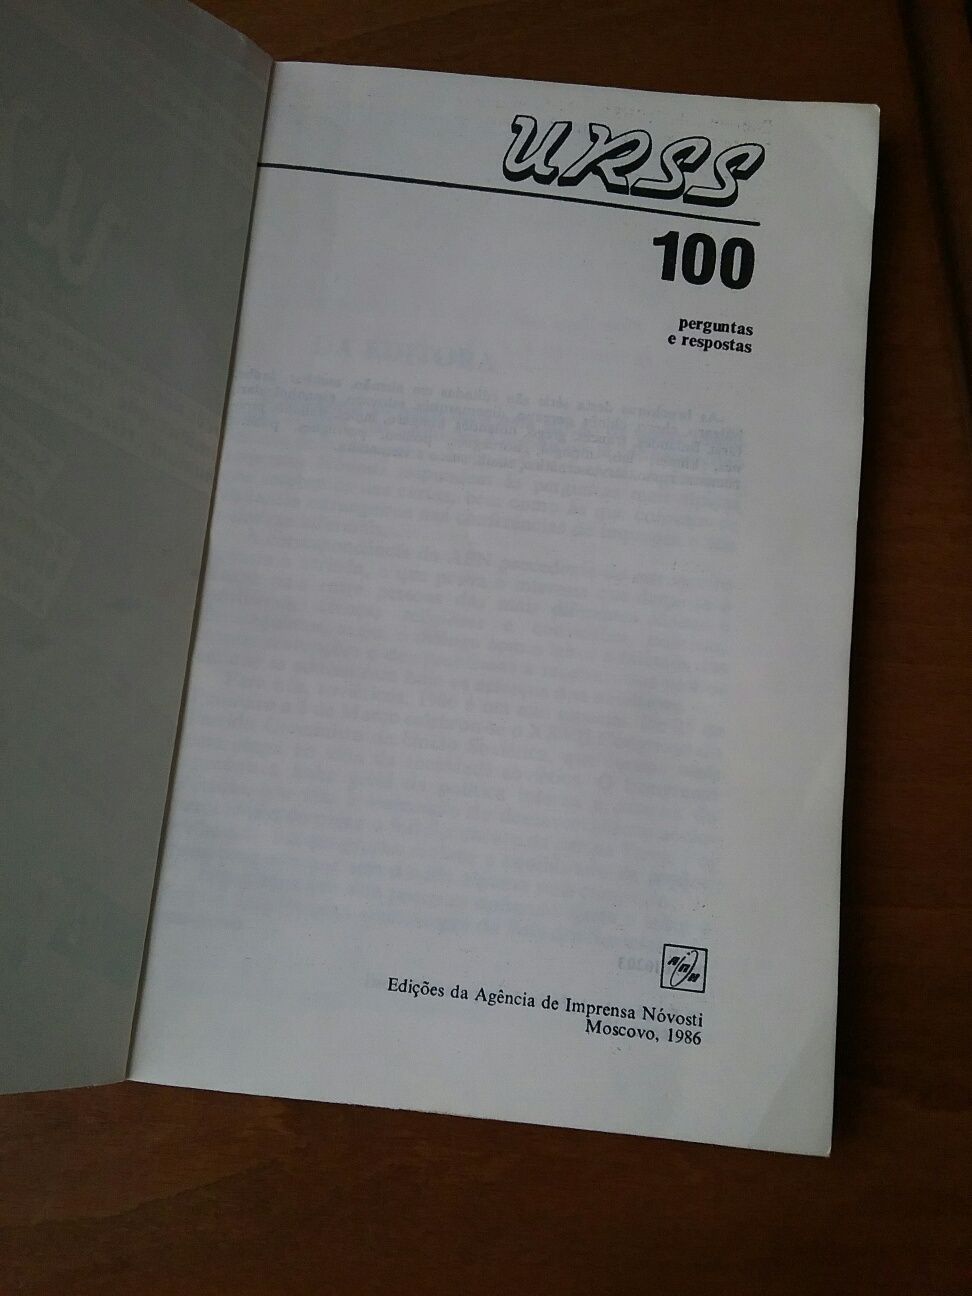 Livro " URSS - 100 perguntas e respostas"